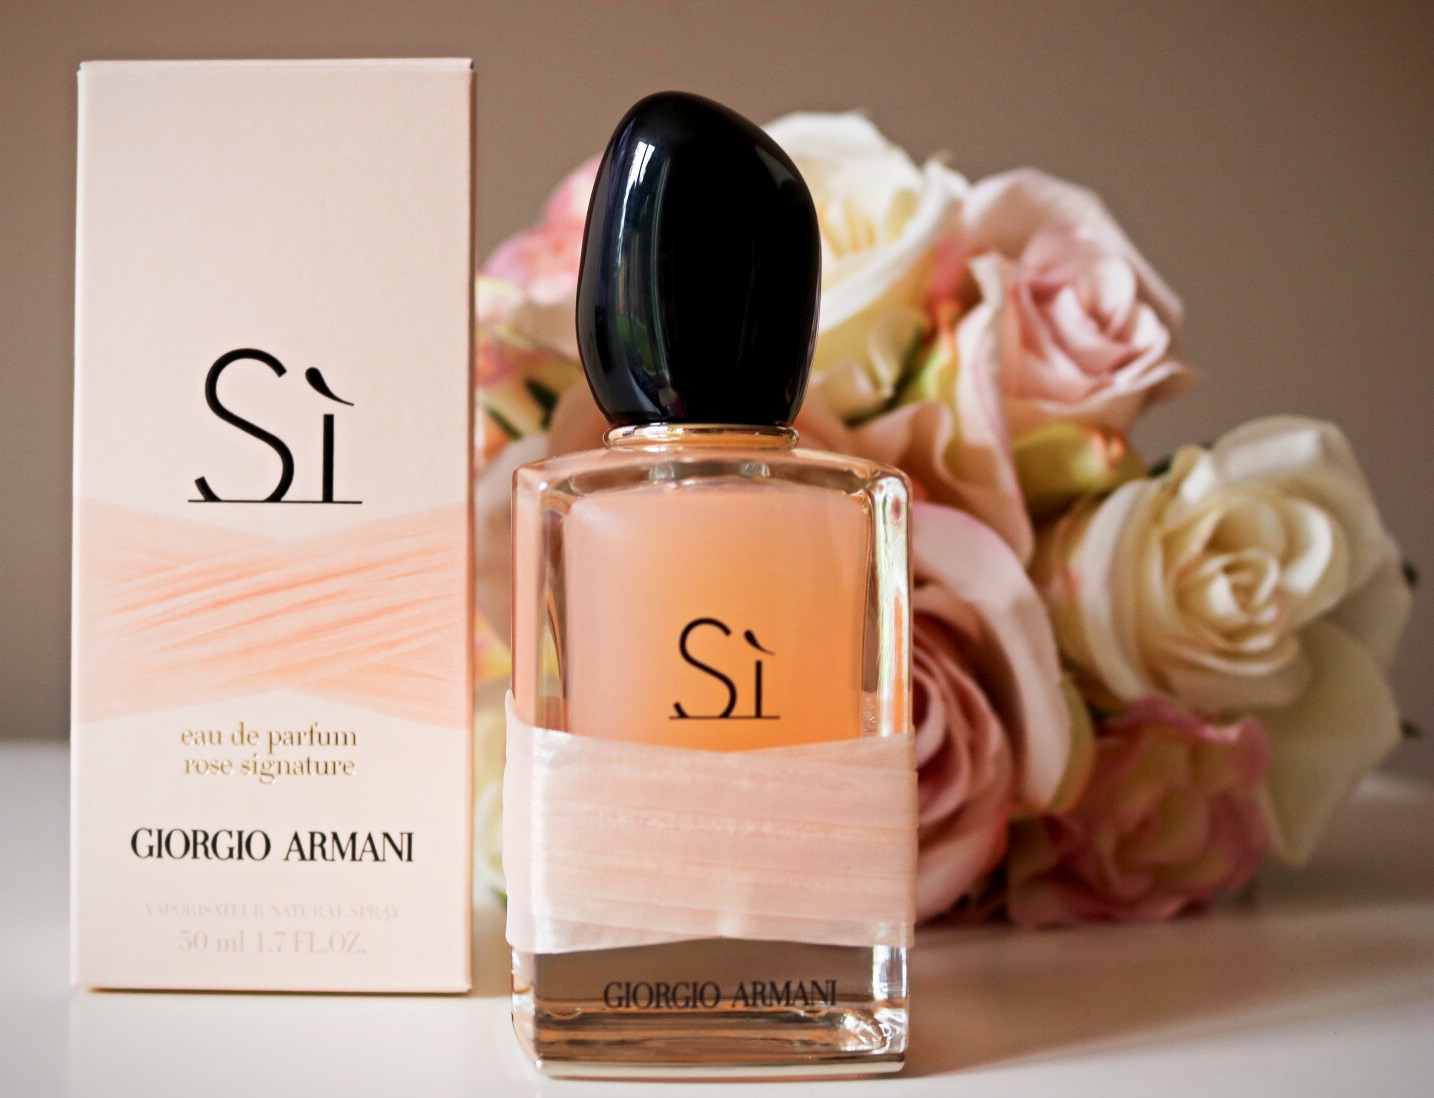 giorgio armani si rose signature eau de parfum 50ml